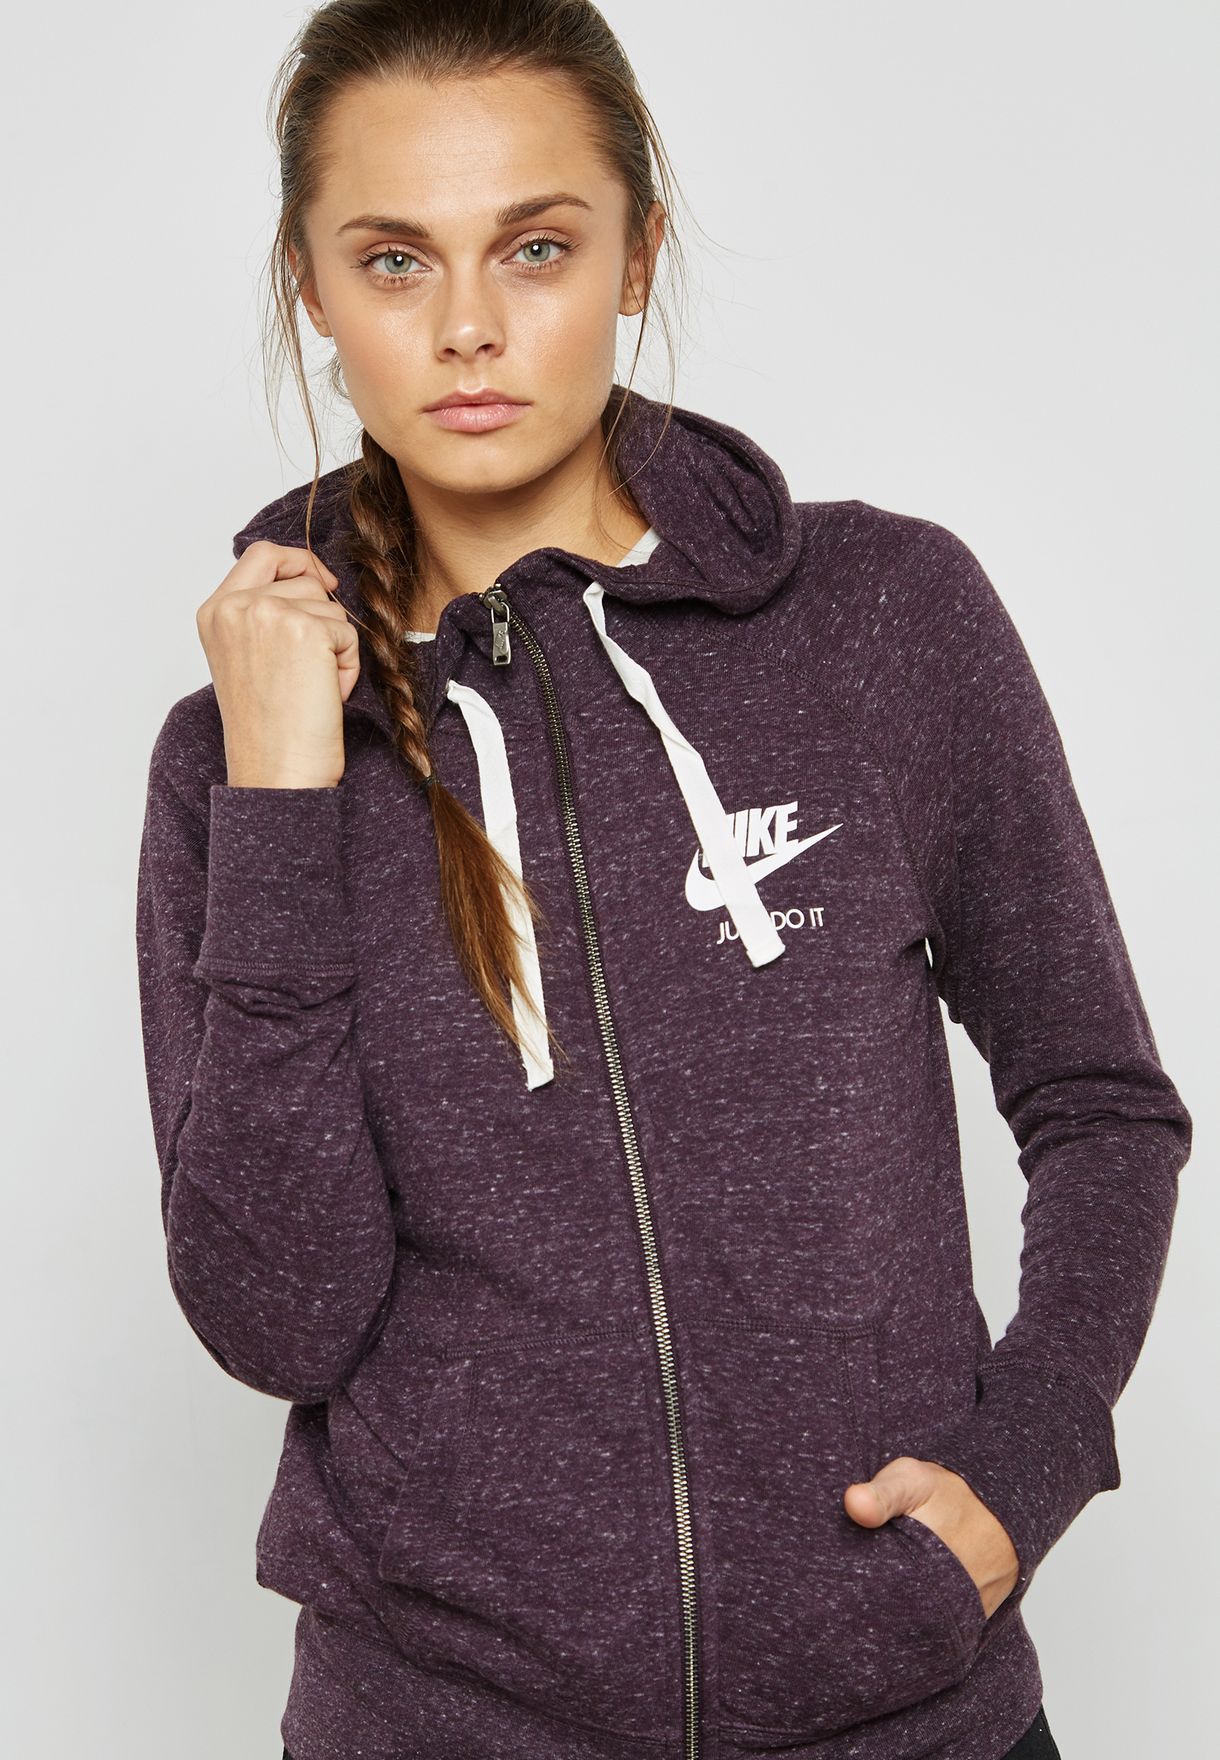 lavender nike zip up hoodie